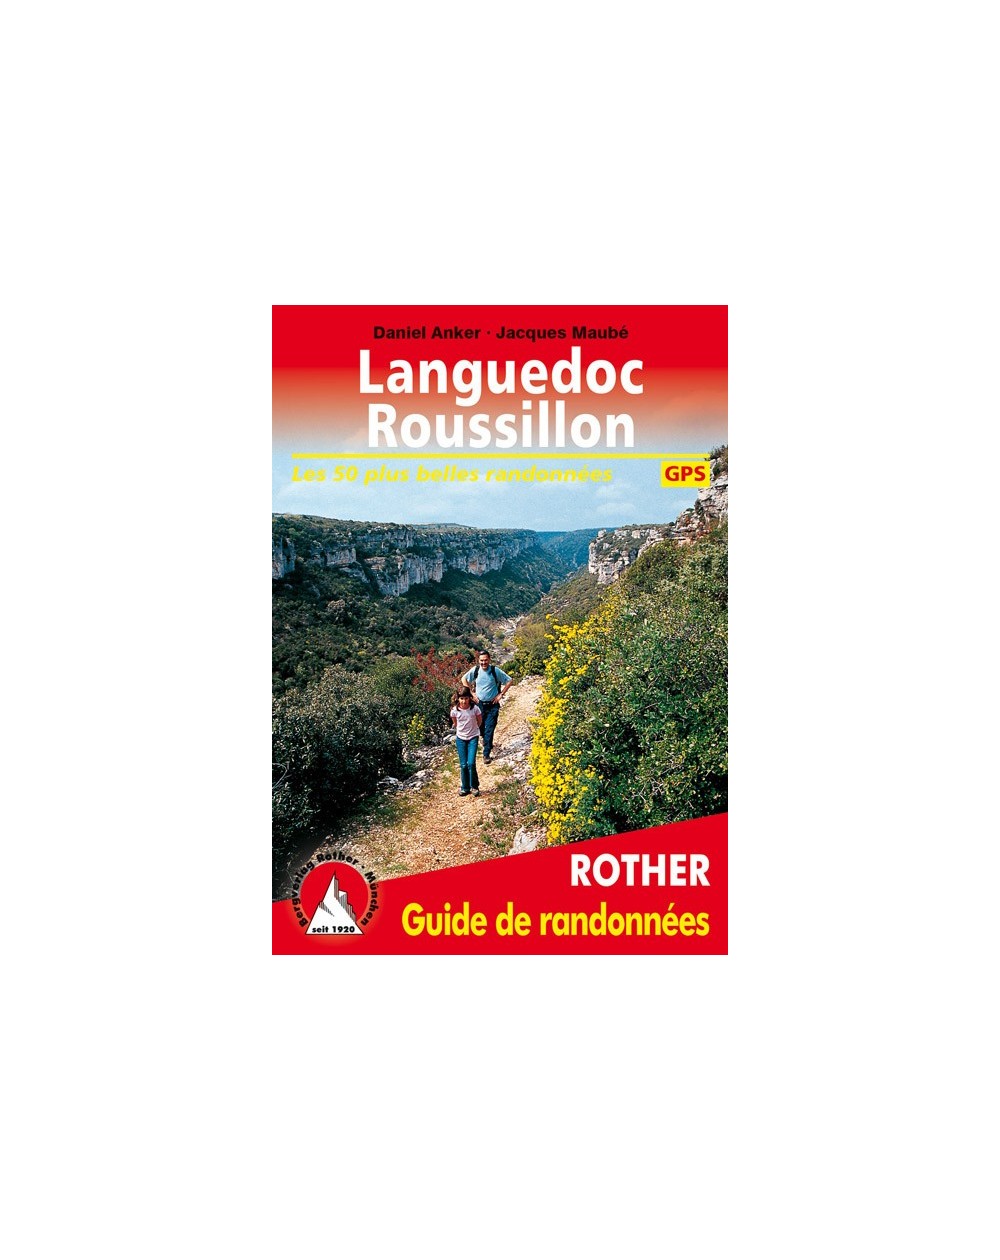 Guide Rother de randonnée Languedoc Roussillon